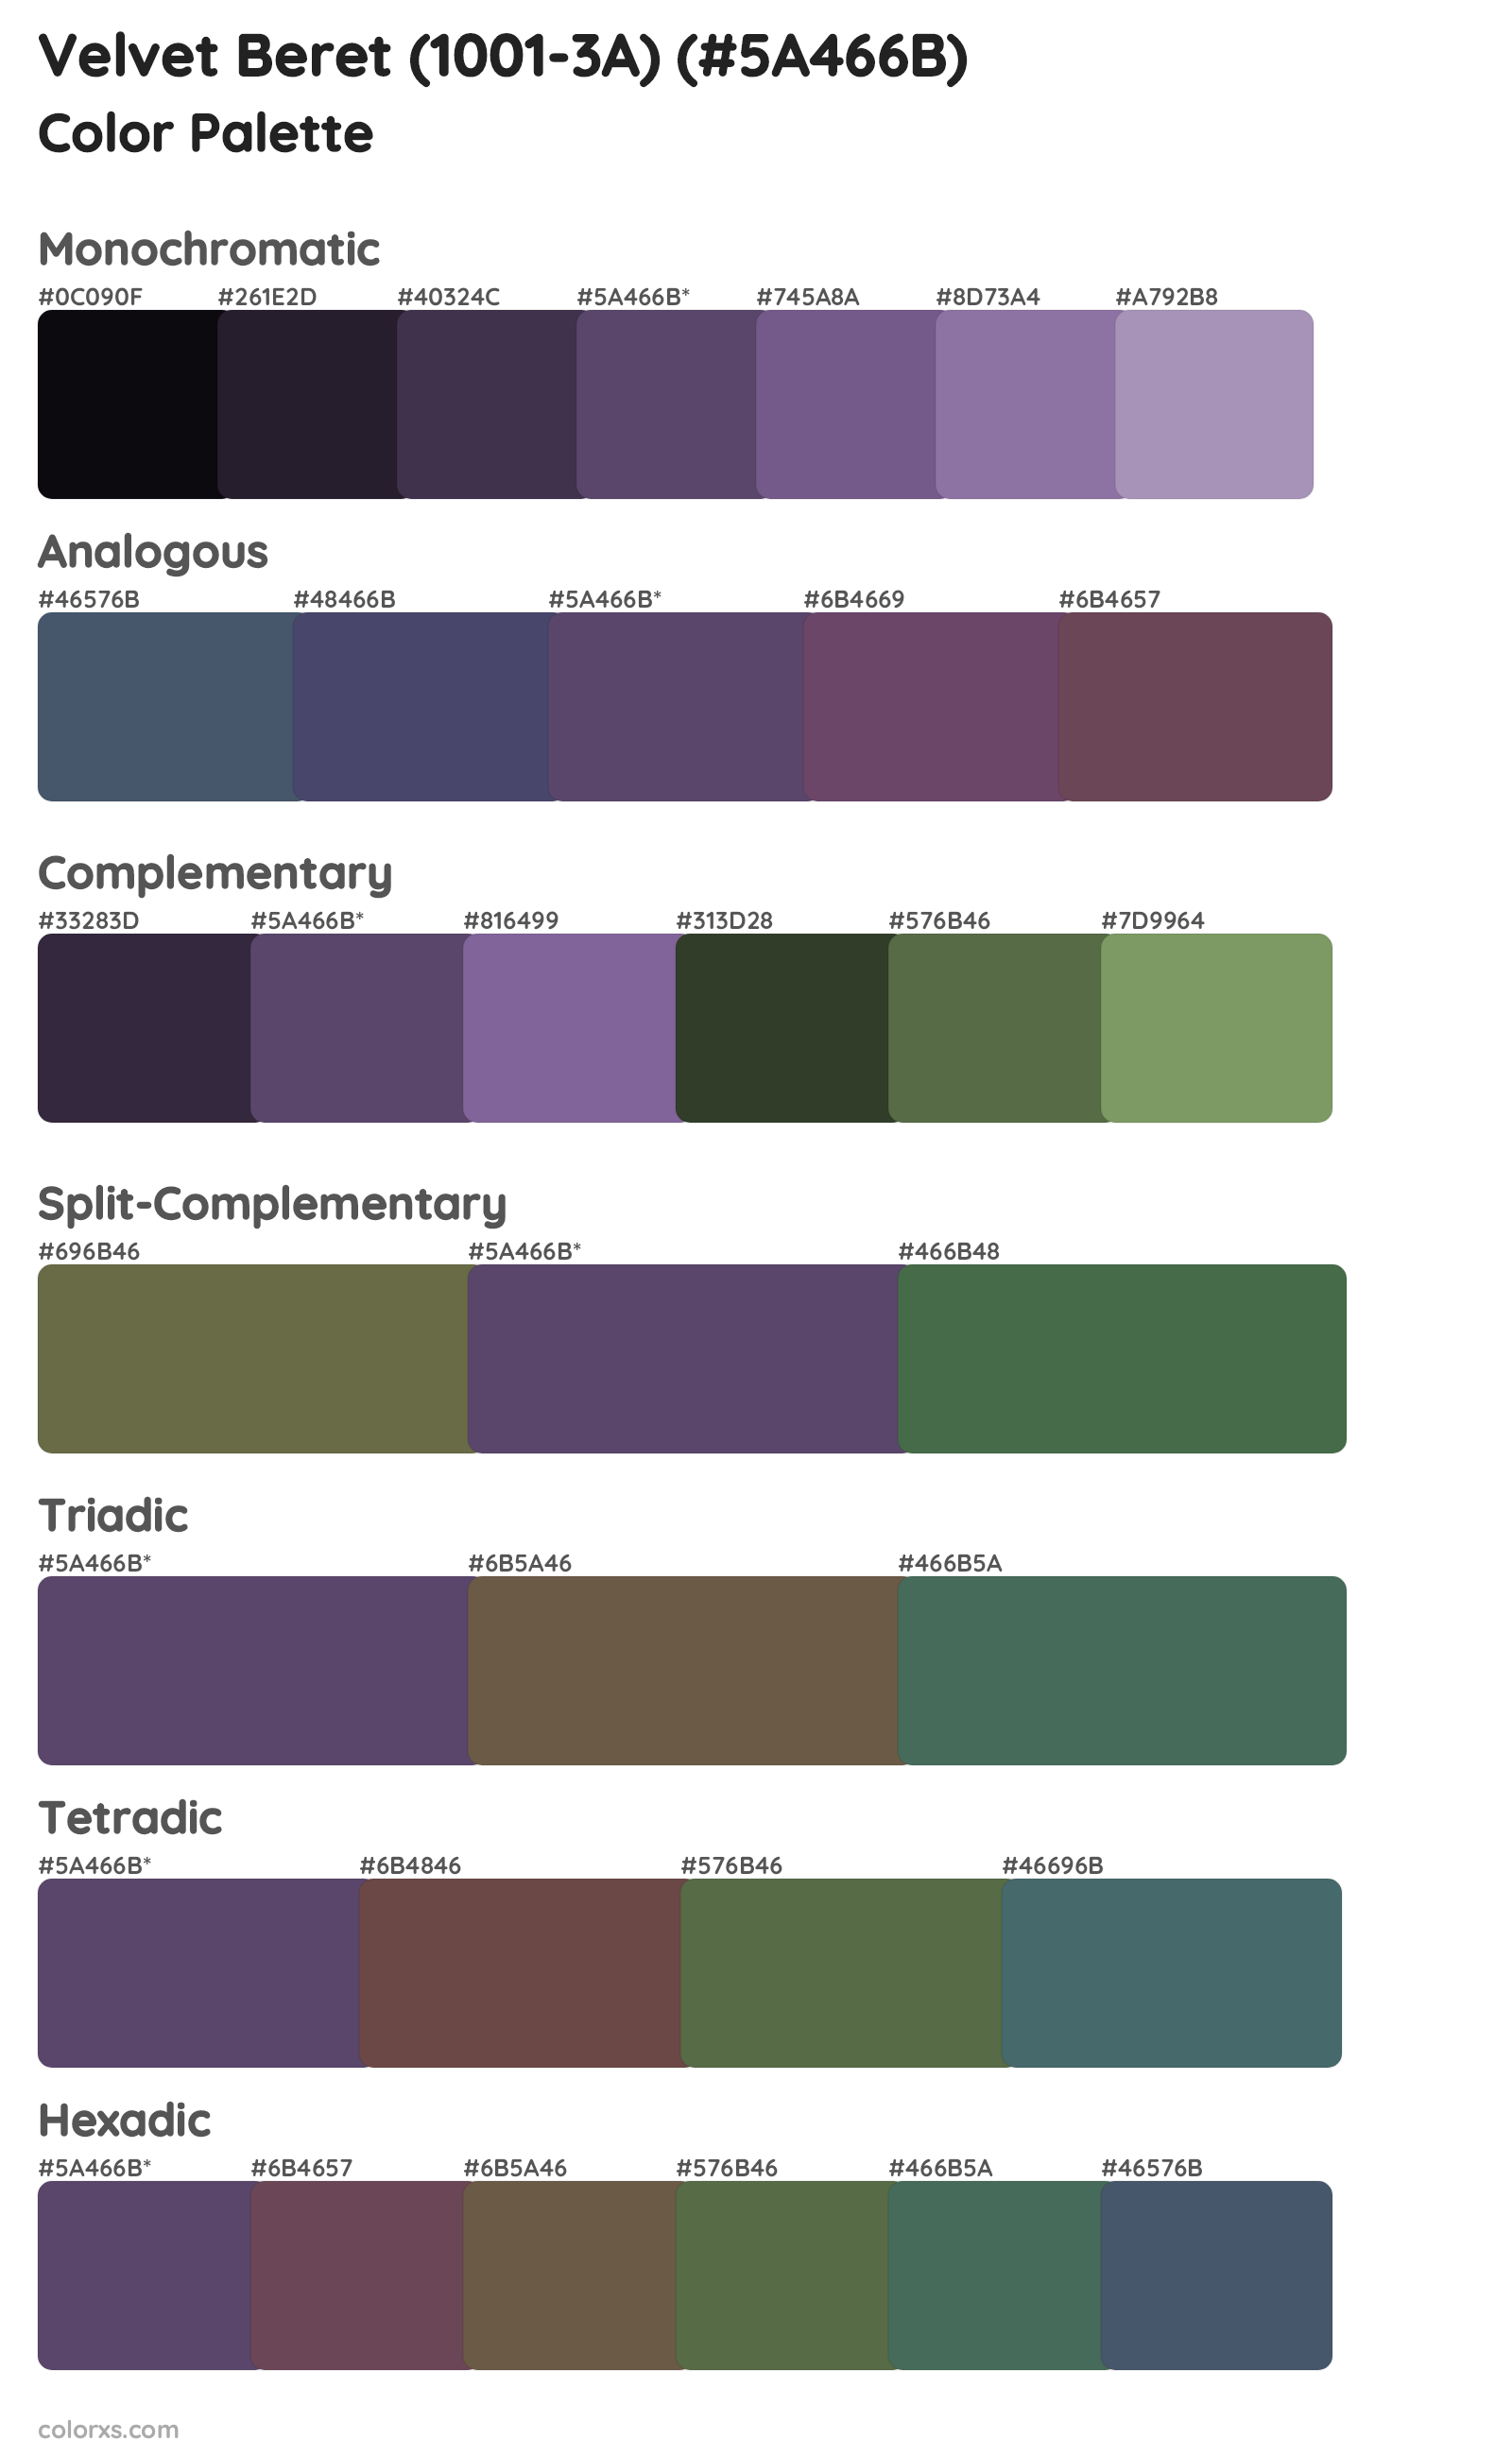 Velvet Beret (1001-3A) Color Scheme Palettes